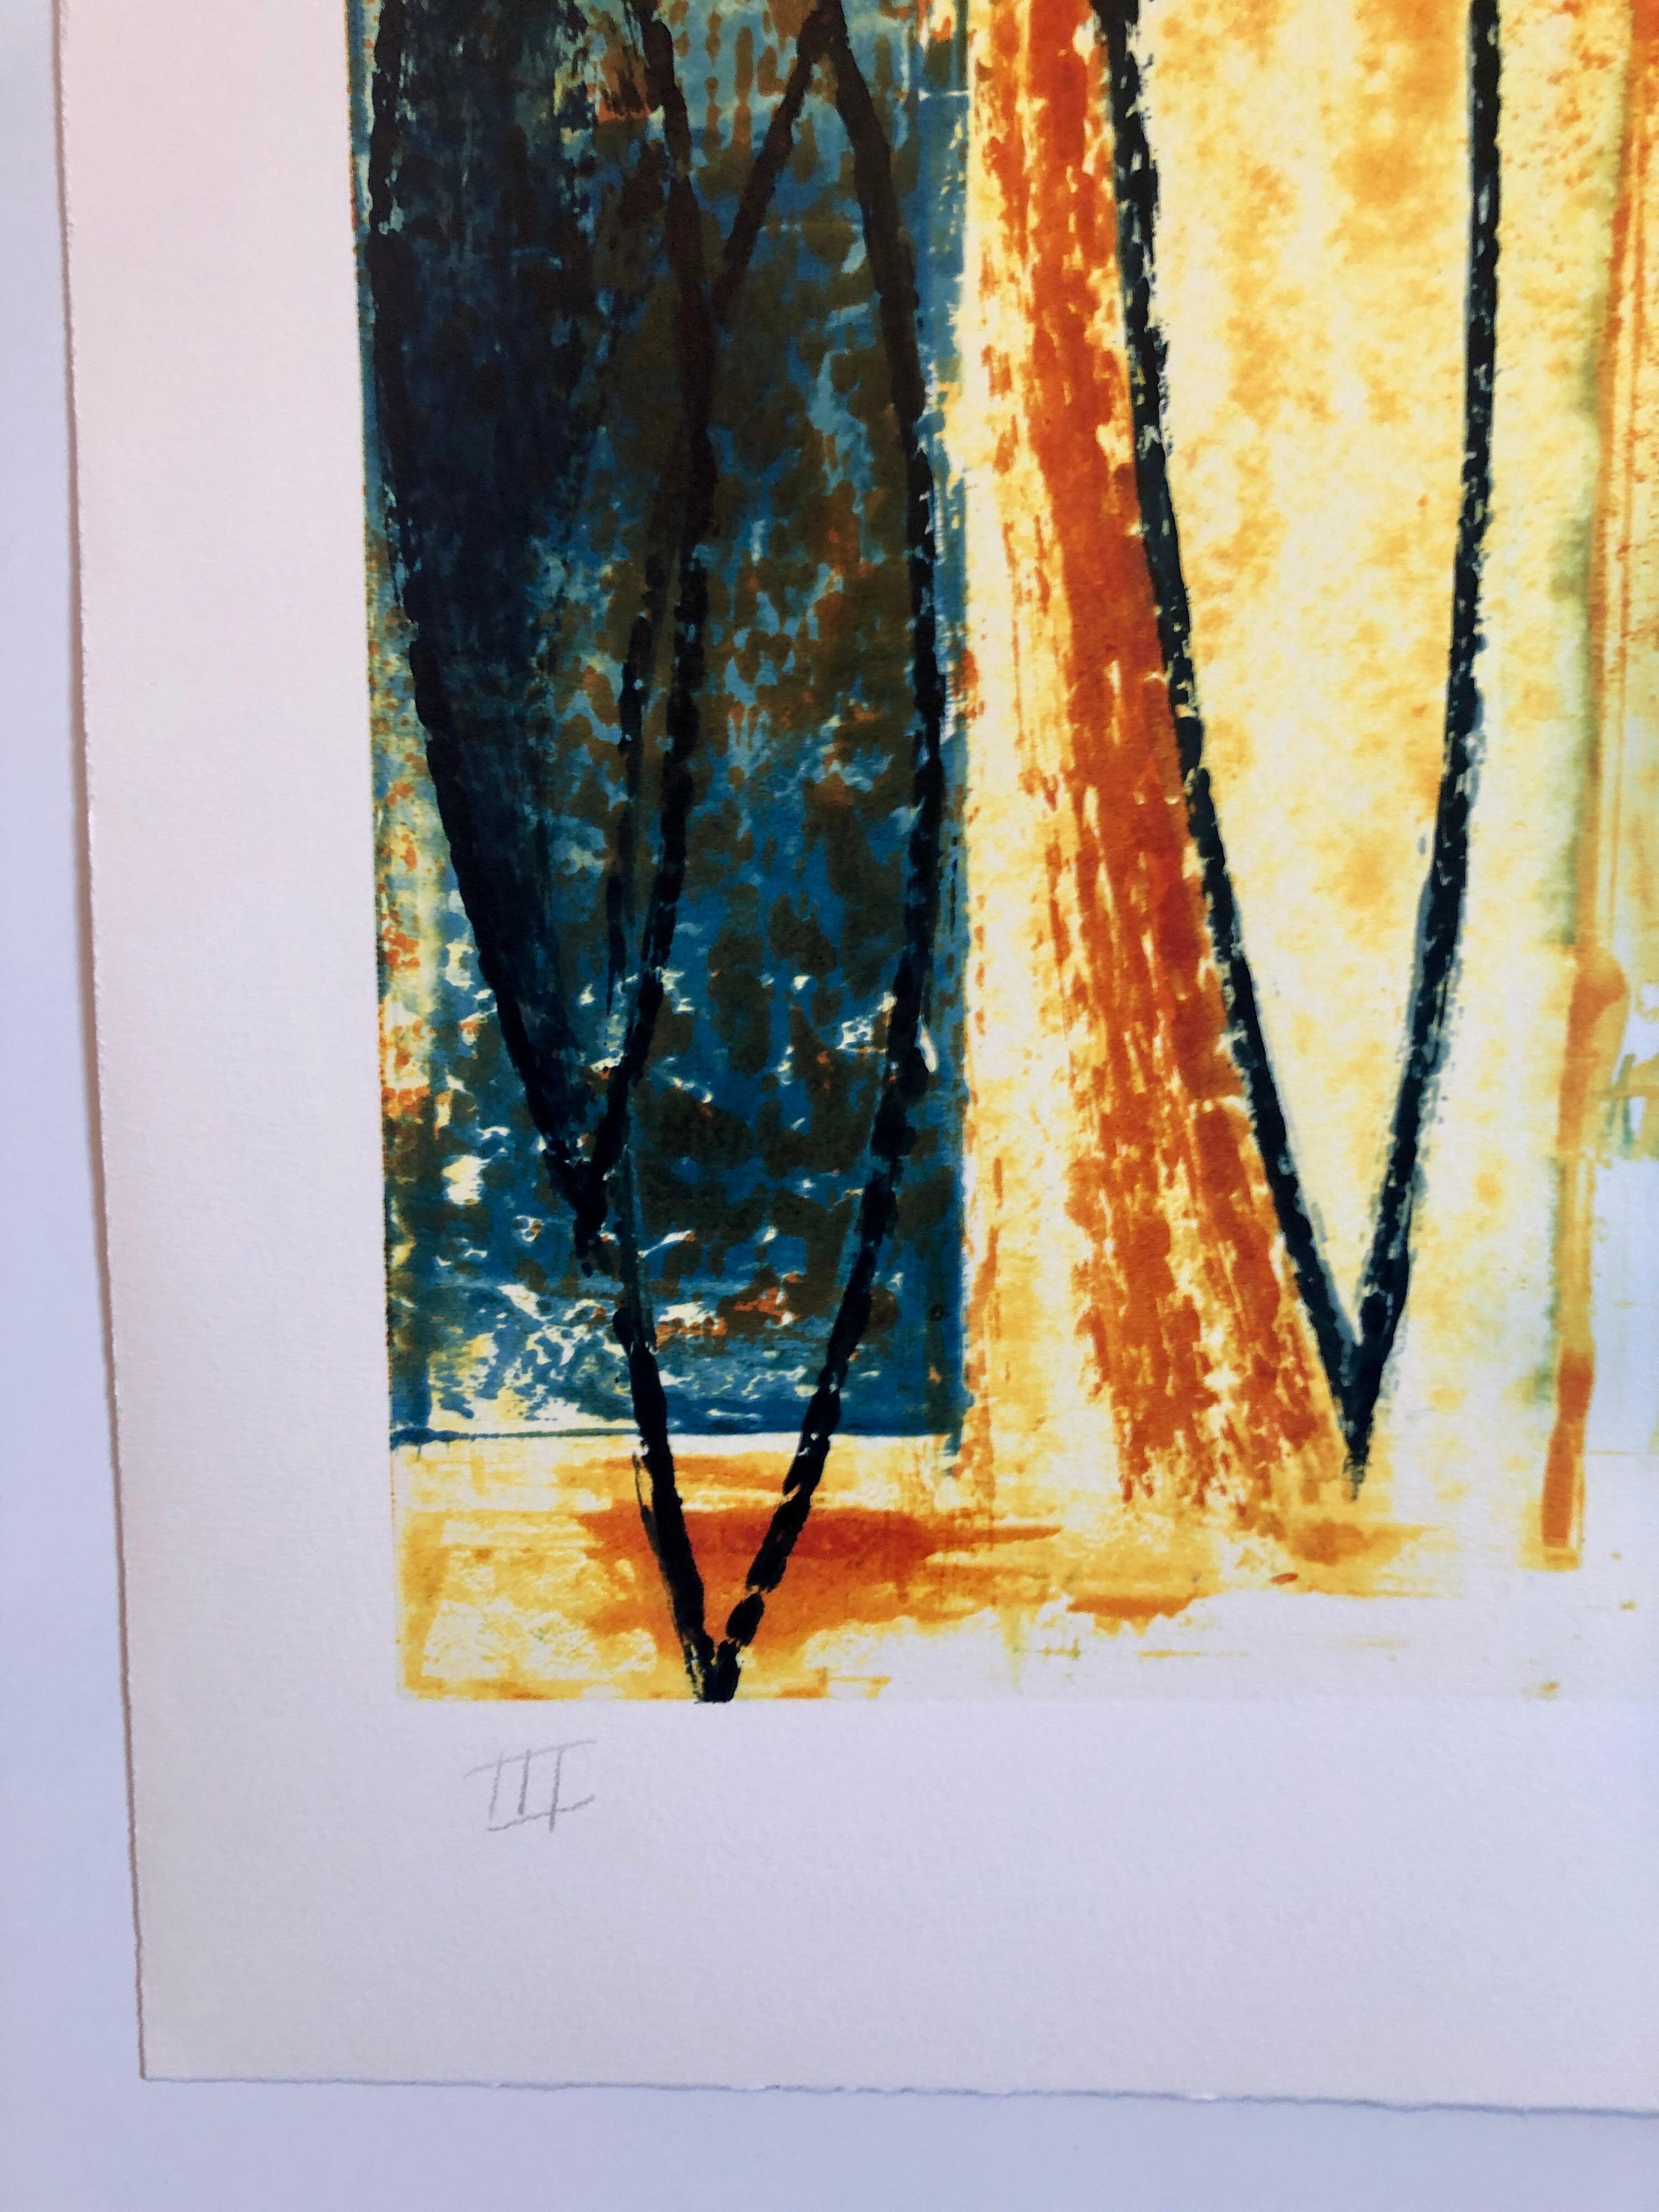 Larry Brown
Peintre new-yorkais établi de longue date et membre de la faculté de la Cooper Union, Brown travaille à l'huile sur toile et à la détrempe sur papier. Il aborde les thèmes de la science et de l'universalité.

ÉDUCATION :
1970  M.F.A. en